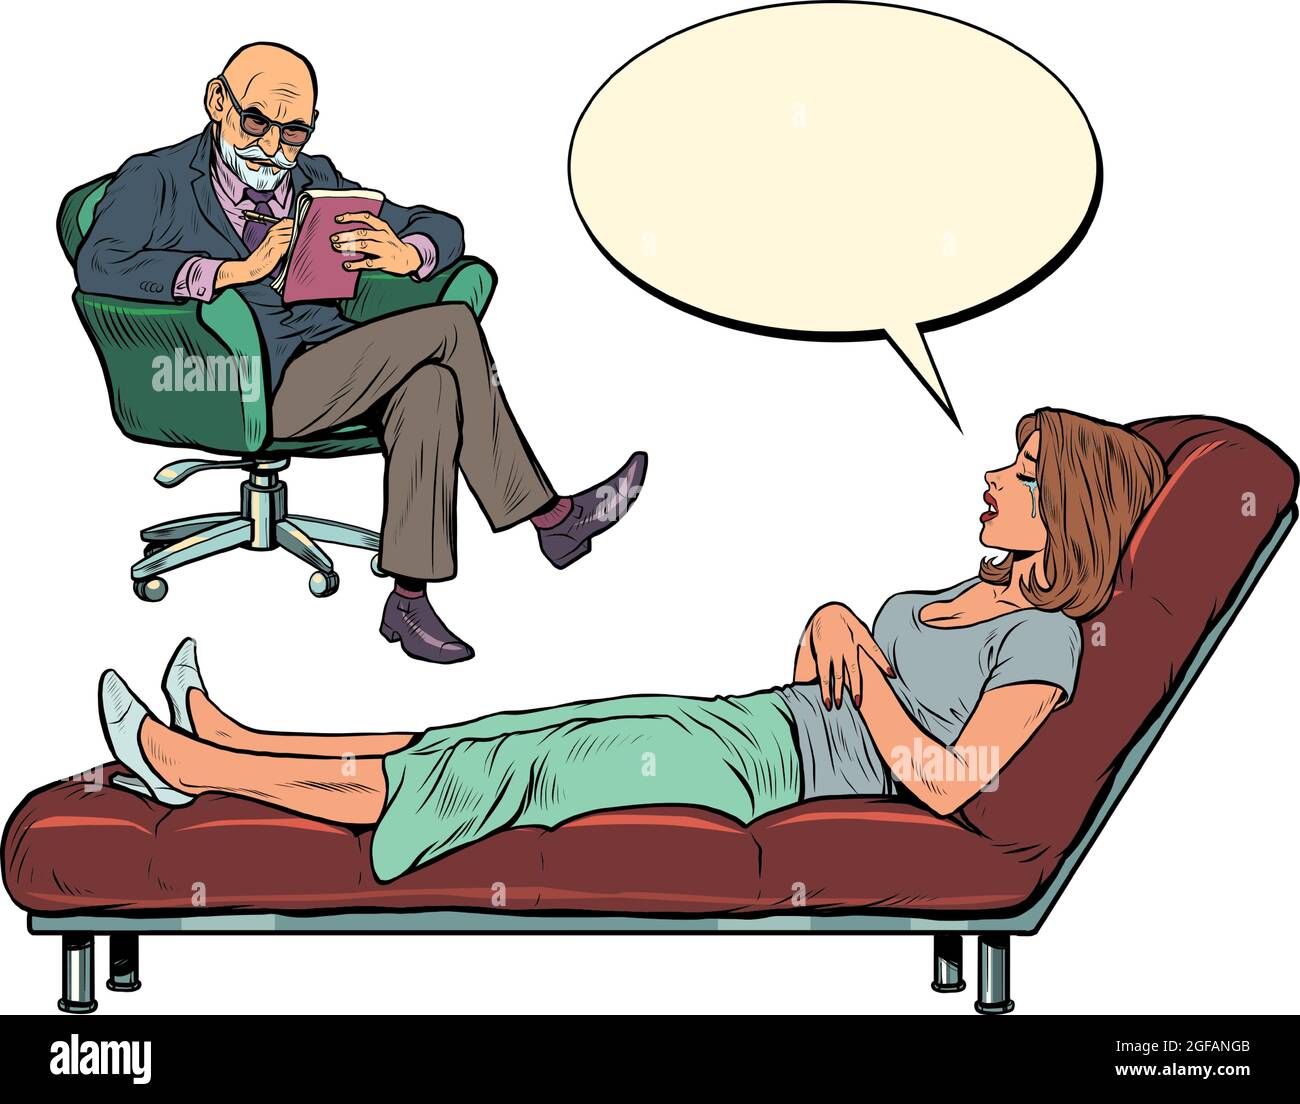 Ein männlicher Psychotherapeut bei einer Psychotherapiesitzung mit einem Patienten, hört einer Frau zu, sitzt auf einem Stuhl und macht Notizen in einem Notizbuch Stock Vektor